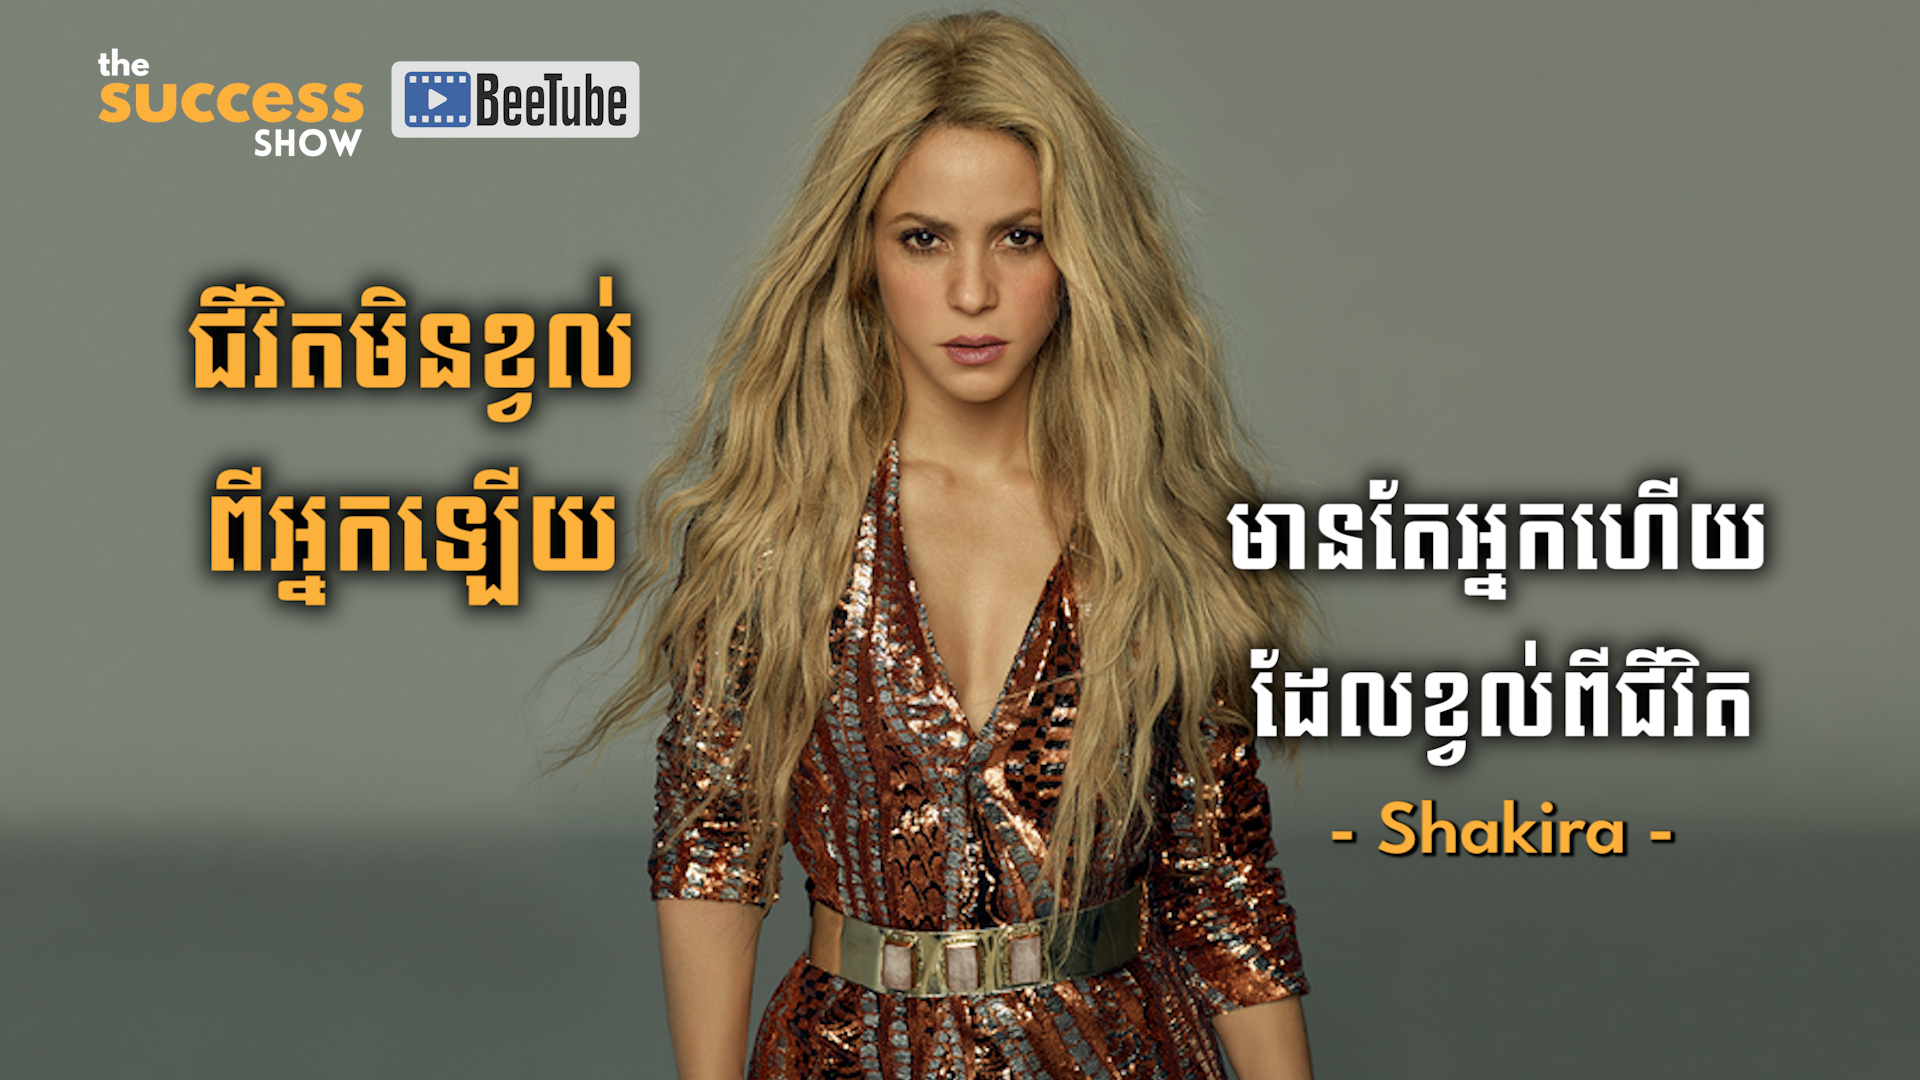 ជីវិតមិនខ្វល់ពីអ្នកឡើយ មានតែអ្នកហើយដែលខ្វល់ពីជីវិត - Shakira